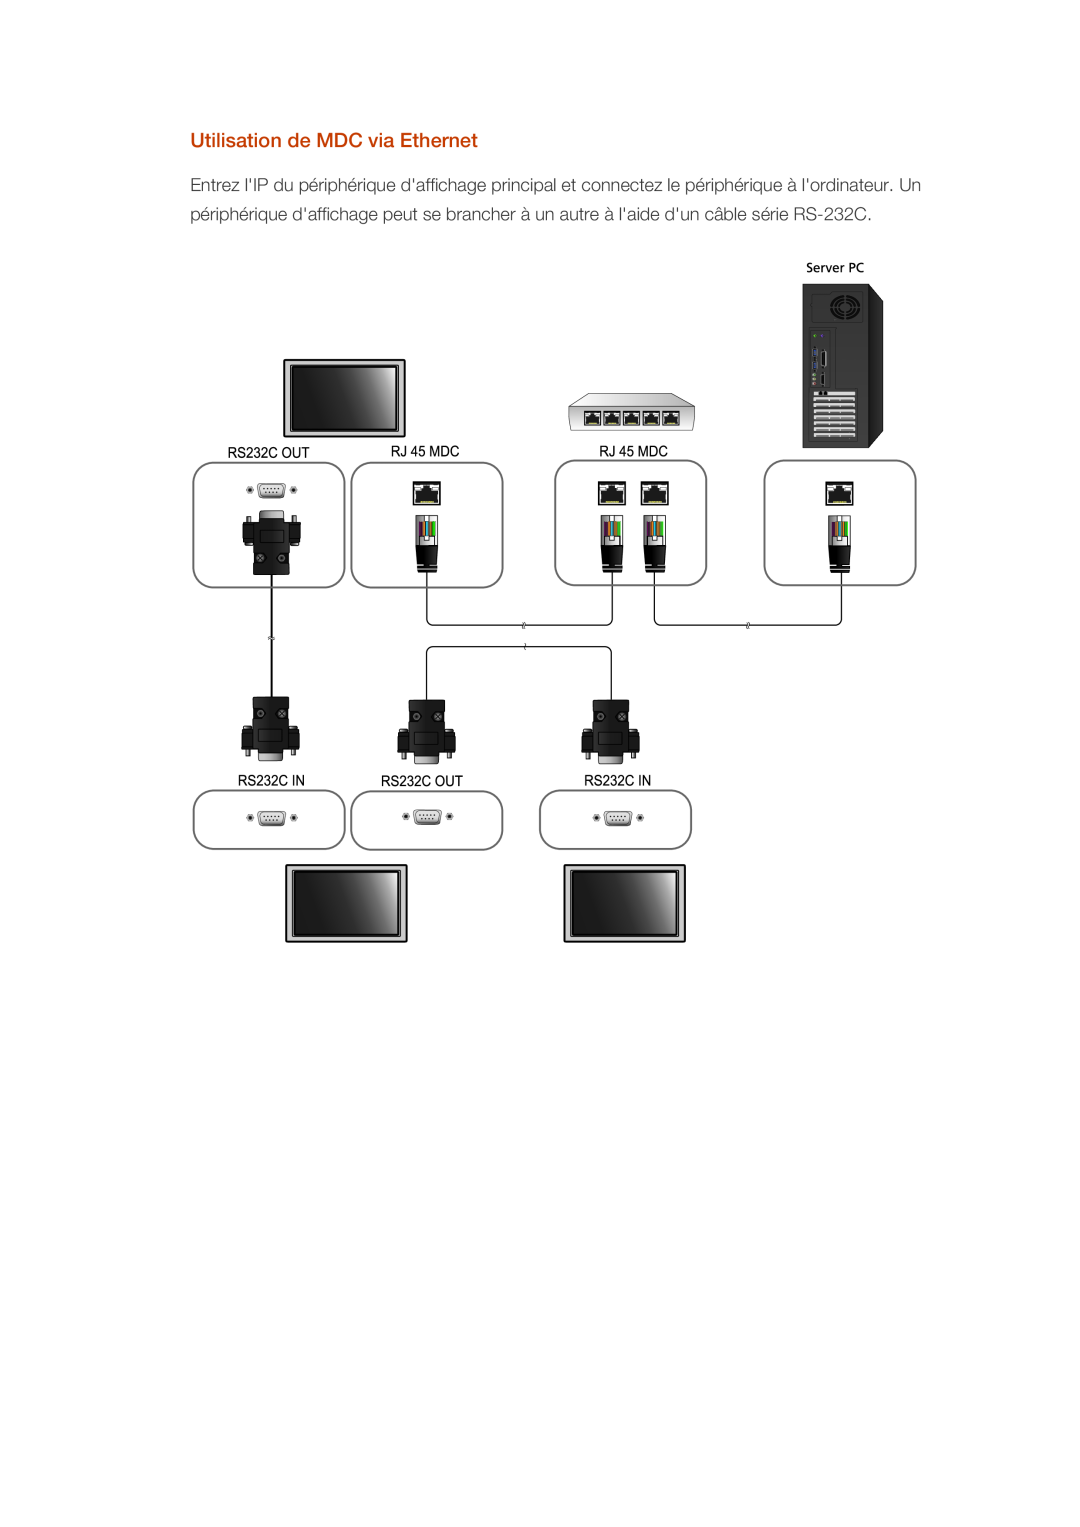 Samsung LH40CRPMBD/EN, LH46CRPMBD/EN, LH46CRPMBC/EN, LH40CRPMBC/EN manual Utilisation de MDC via Ethernet 